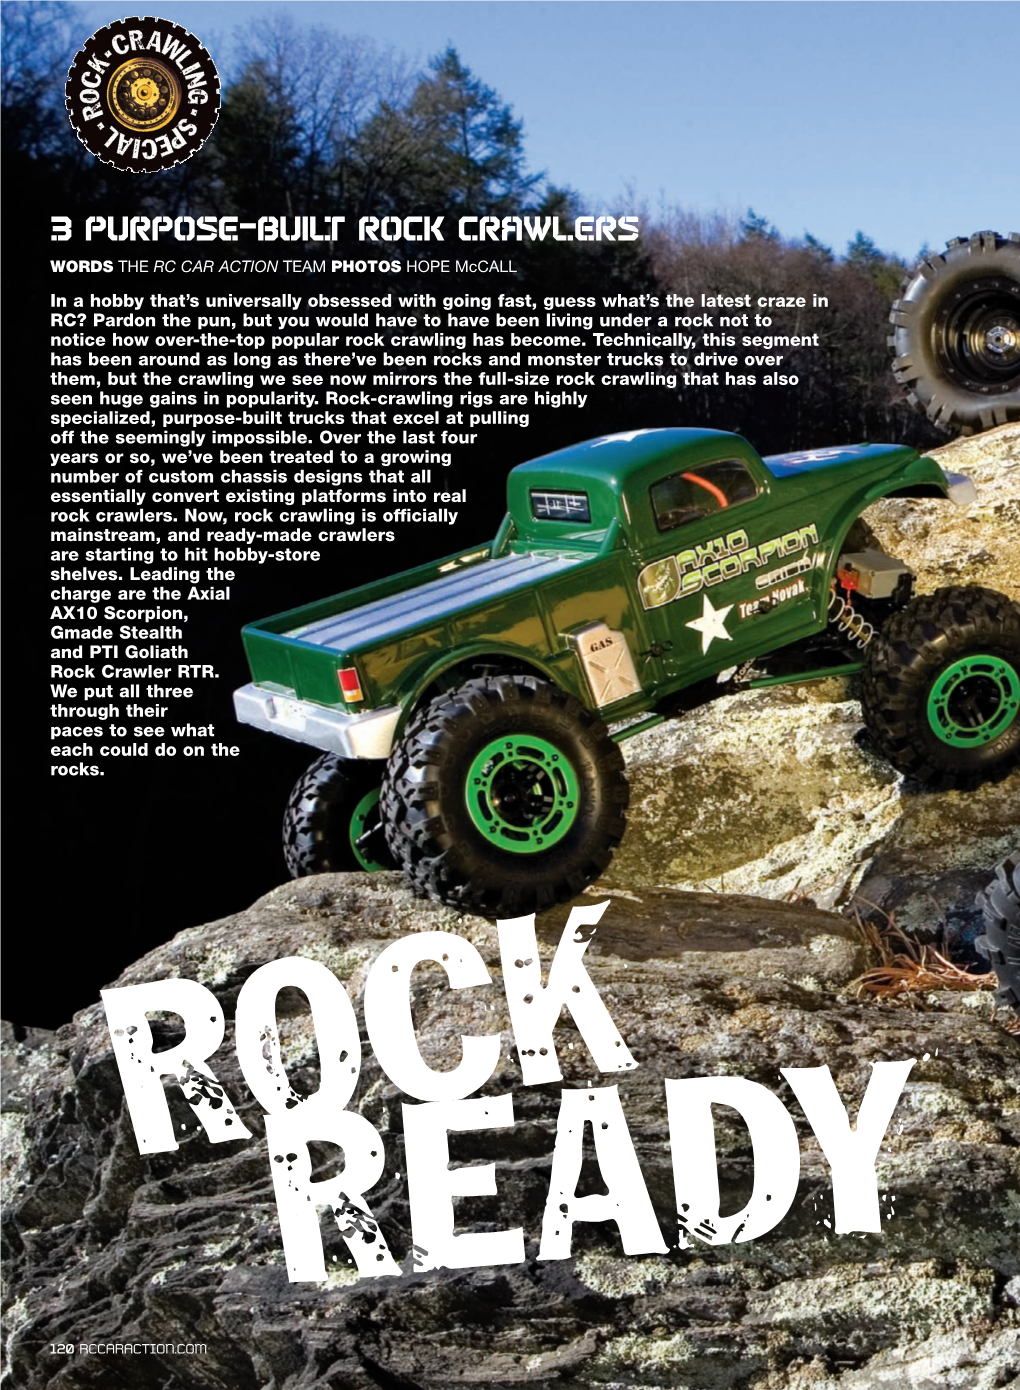 3 Purpose-Built Rock Crawlers